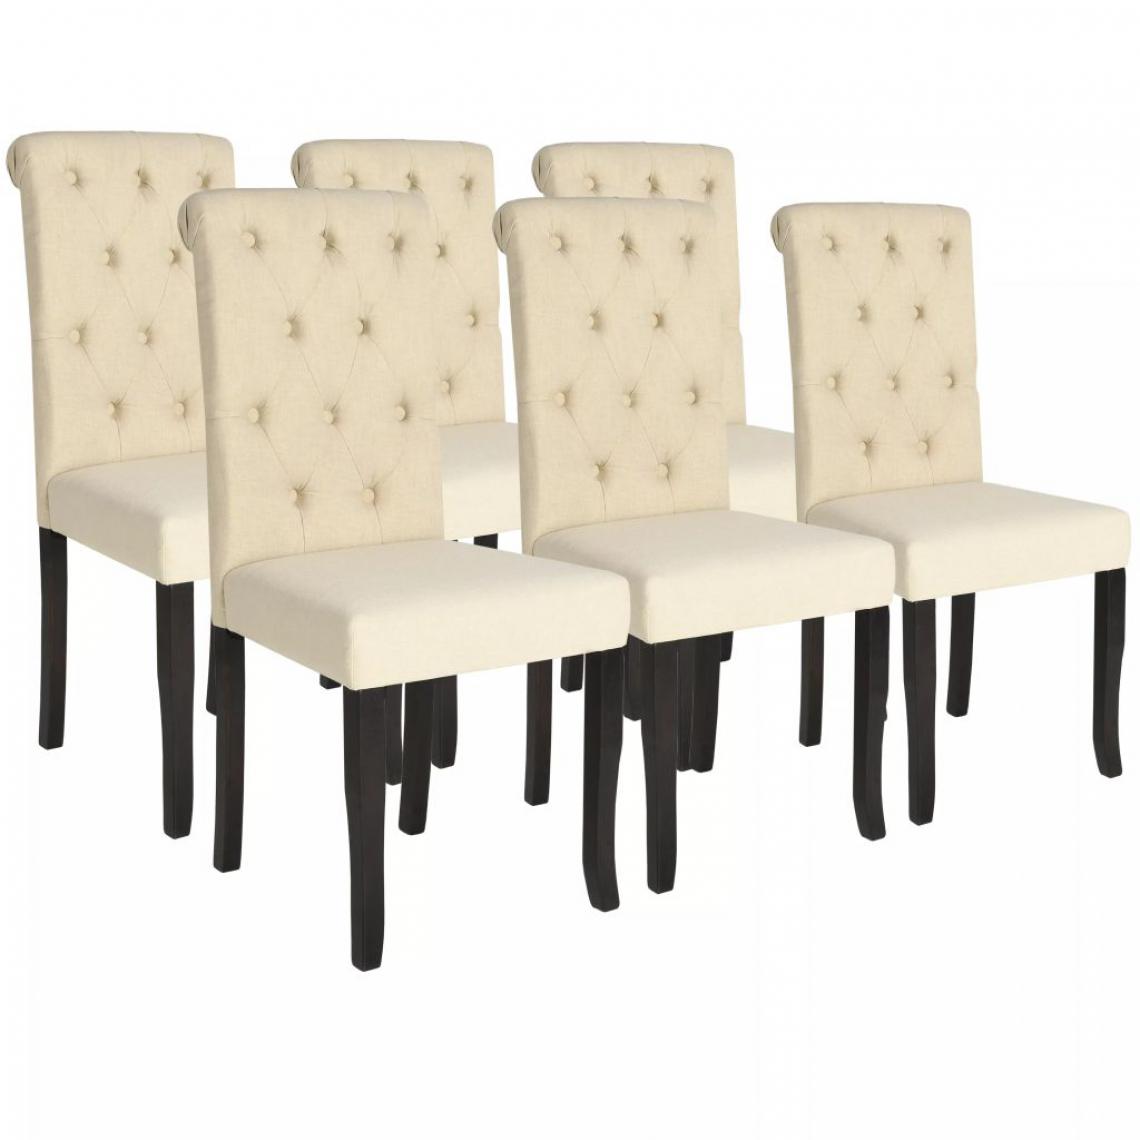 Vidaxl - Chaise de salle à manger 6 pcs Bois massif Couleur crème - Chaises de cuisine et de salle à manger - Crème - Crème - Chaises